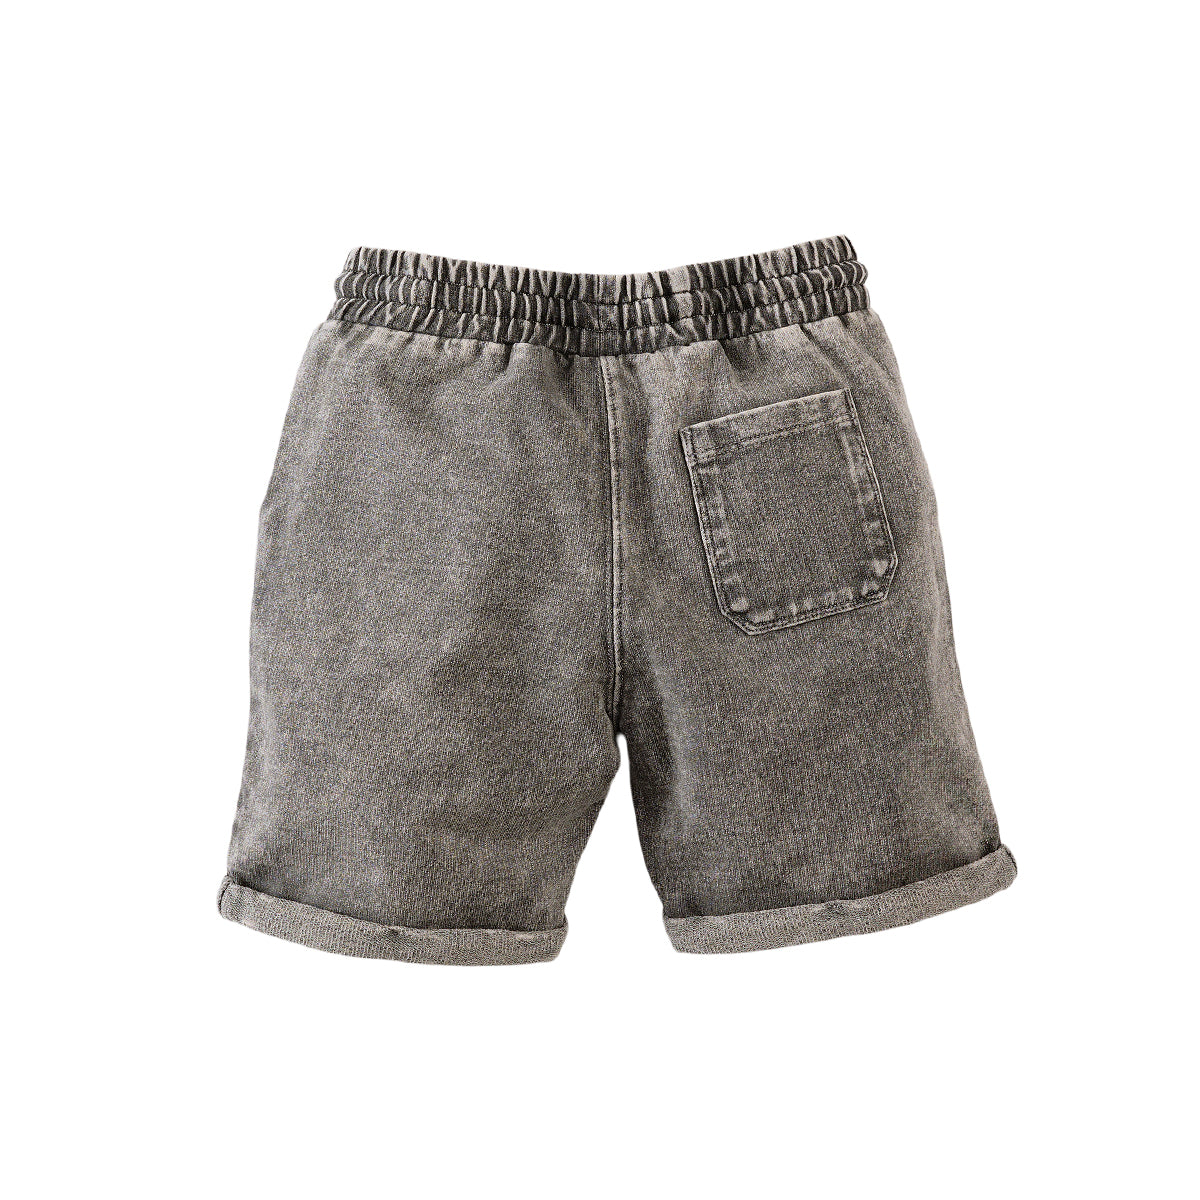 Jongens Sweat Shorts Ferco van Z8 in de kleur Charcoal grey in maat 140.